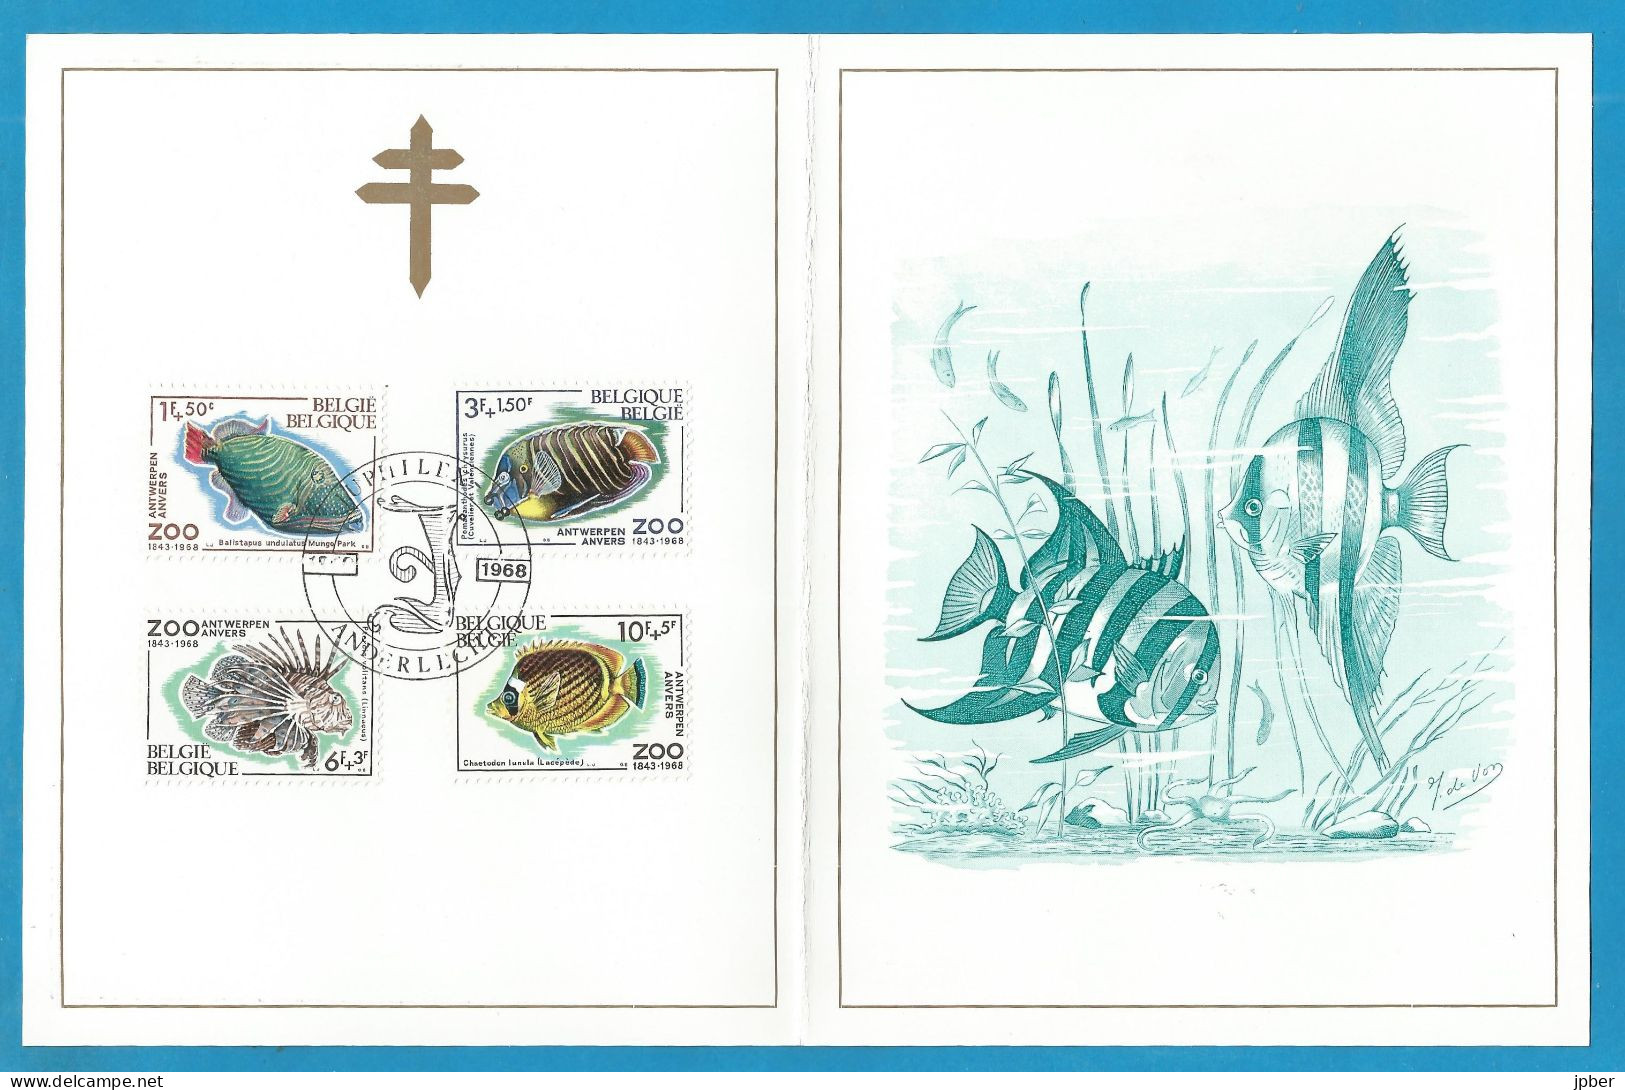 Belgique - Antituberculeux - Campagne 1968-1969 - Timbres N°1470 à 1473 Zoo D'Anvers - Poissons - Documents Commémoratifs